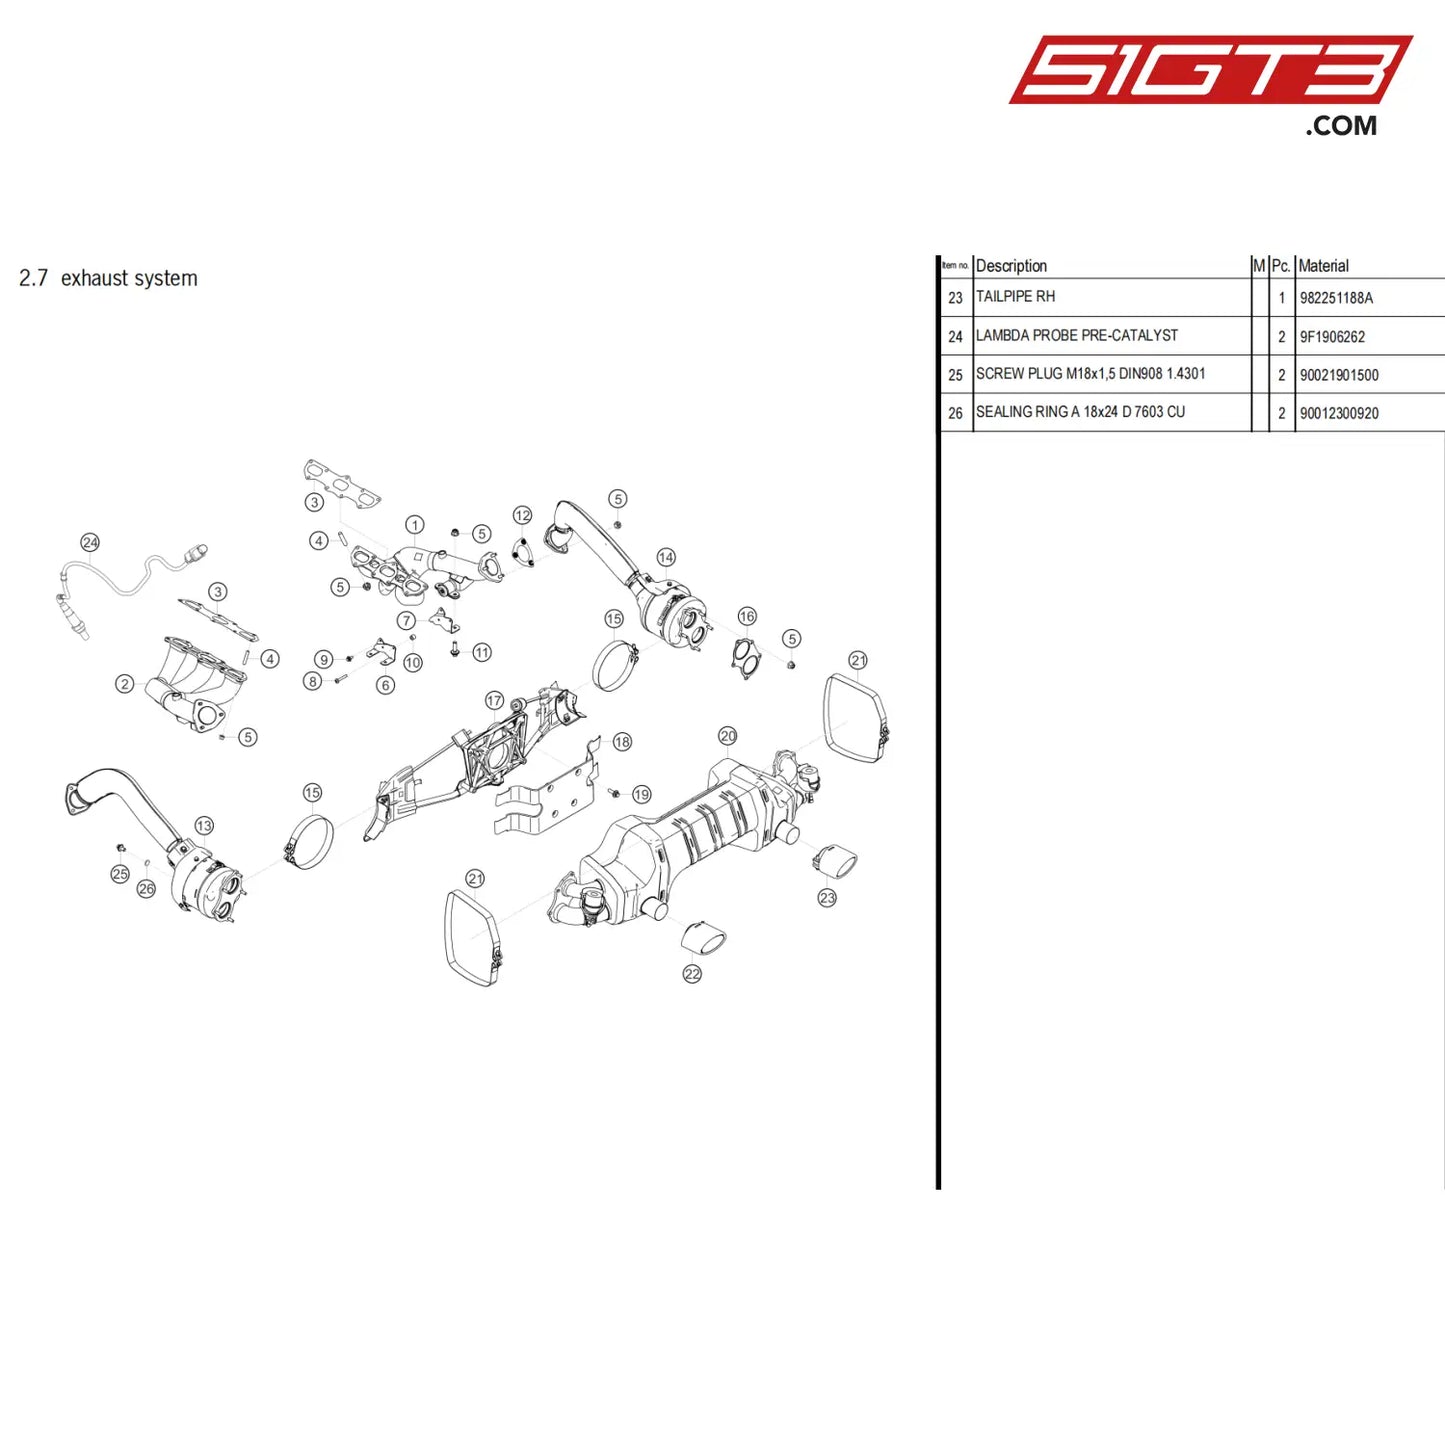 Round Head Screw - 99907335201 [Porsche 718 Cayman Gt4 Clubsport] Exhaust System